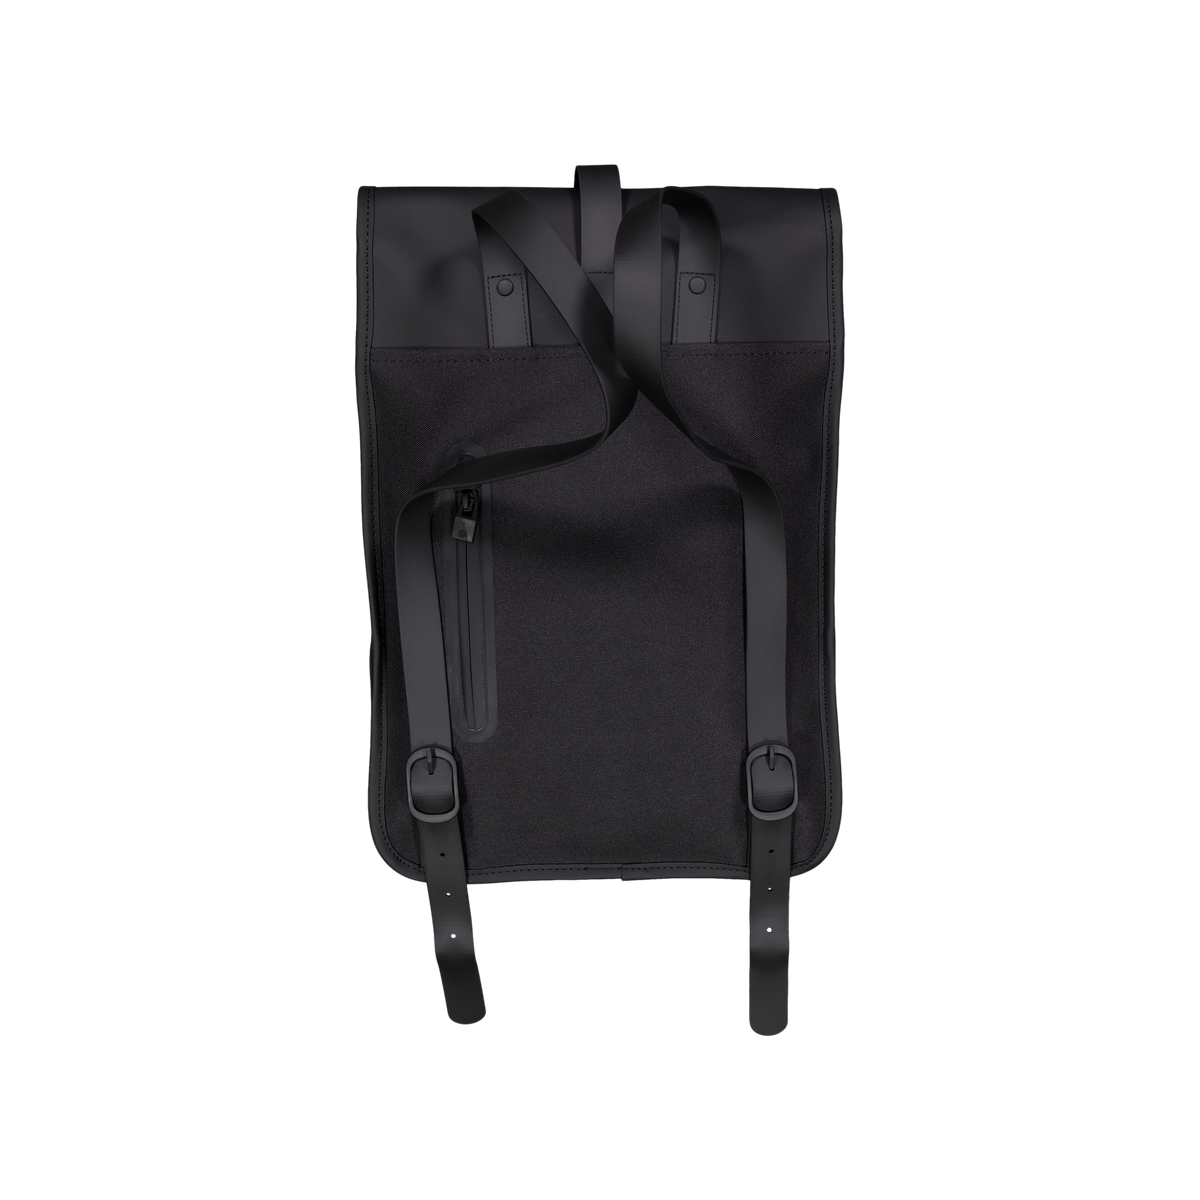 Rains Backpack Mini W3 01